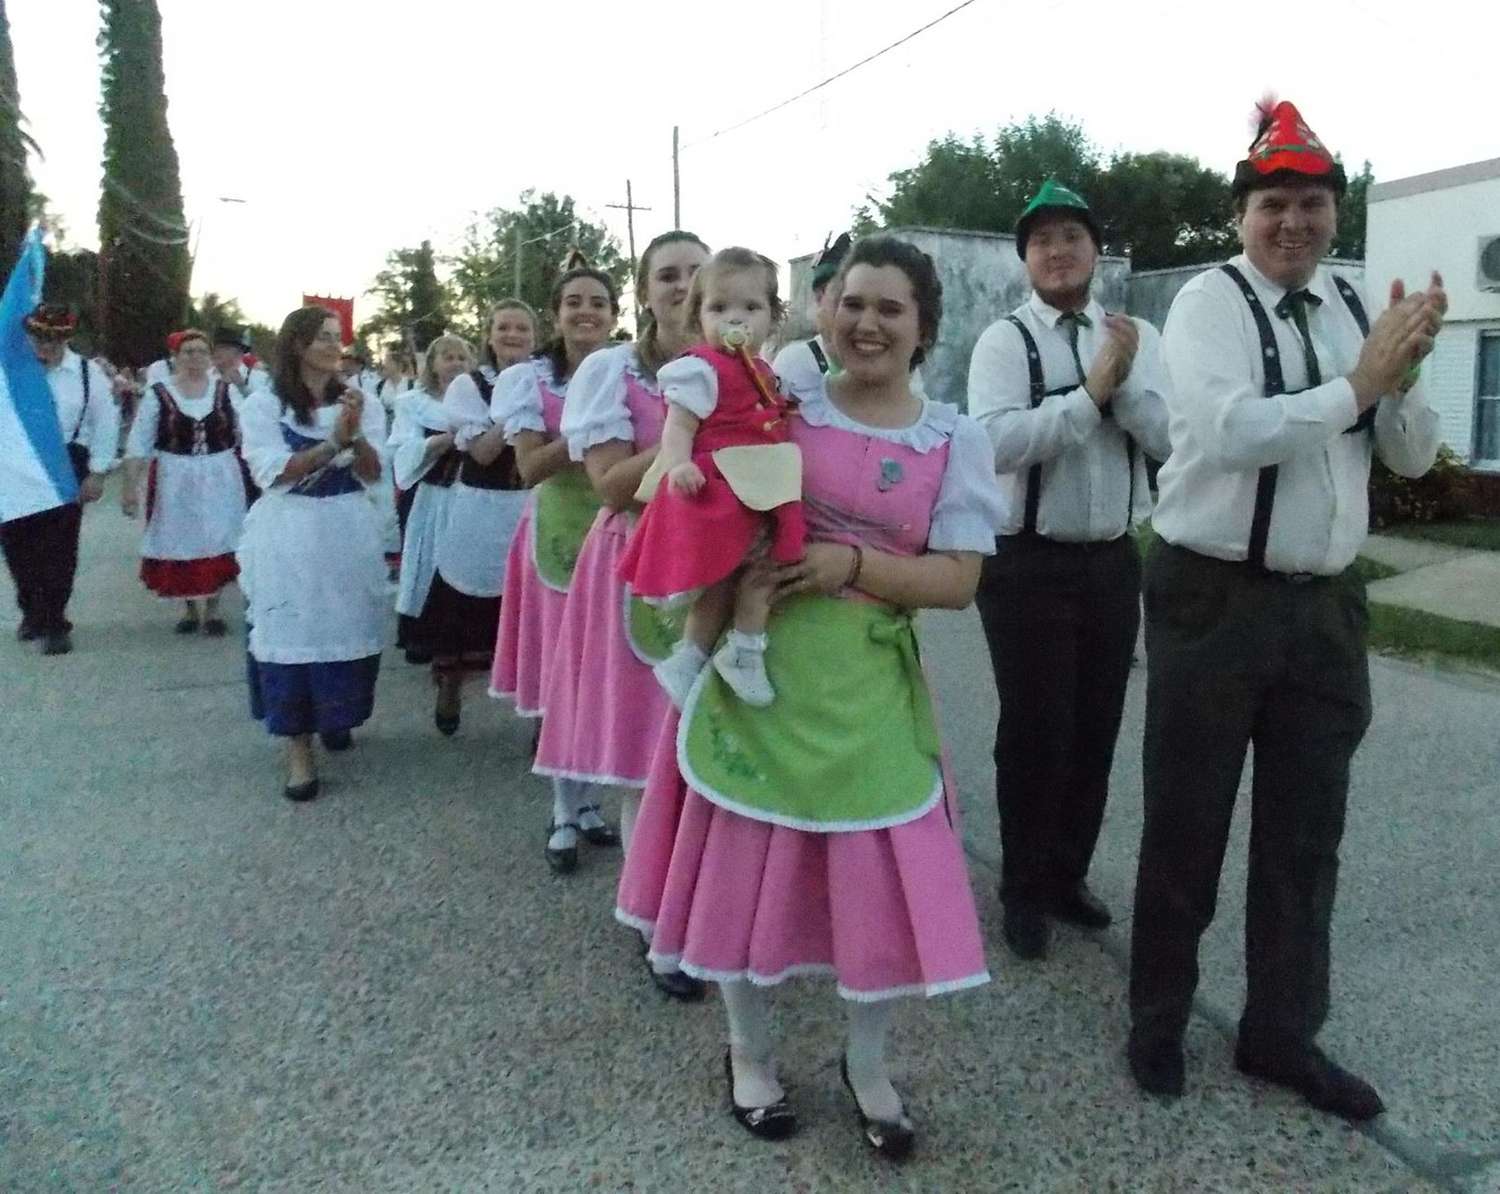 Baile alemán